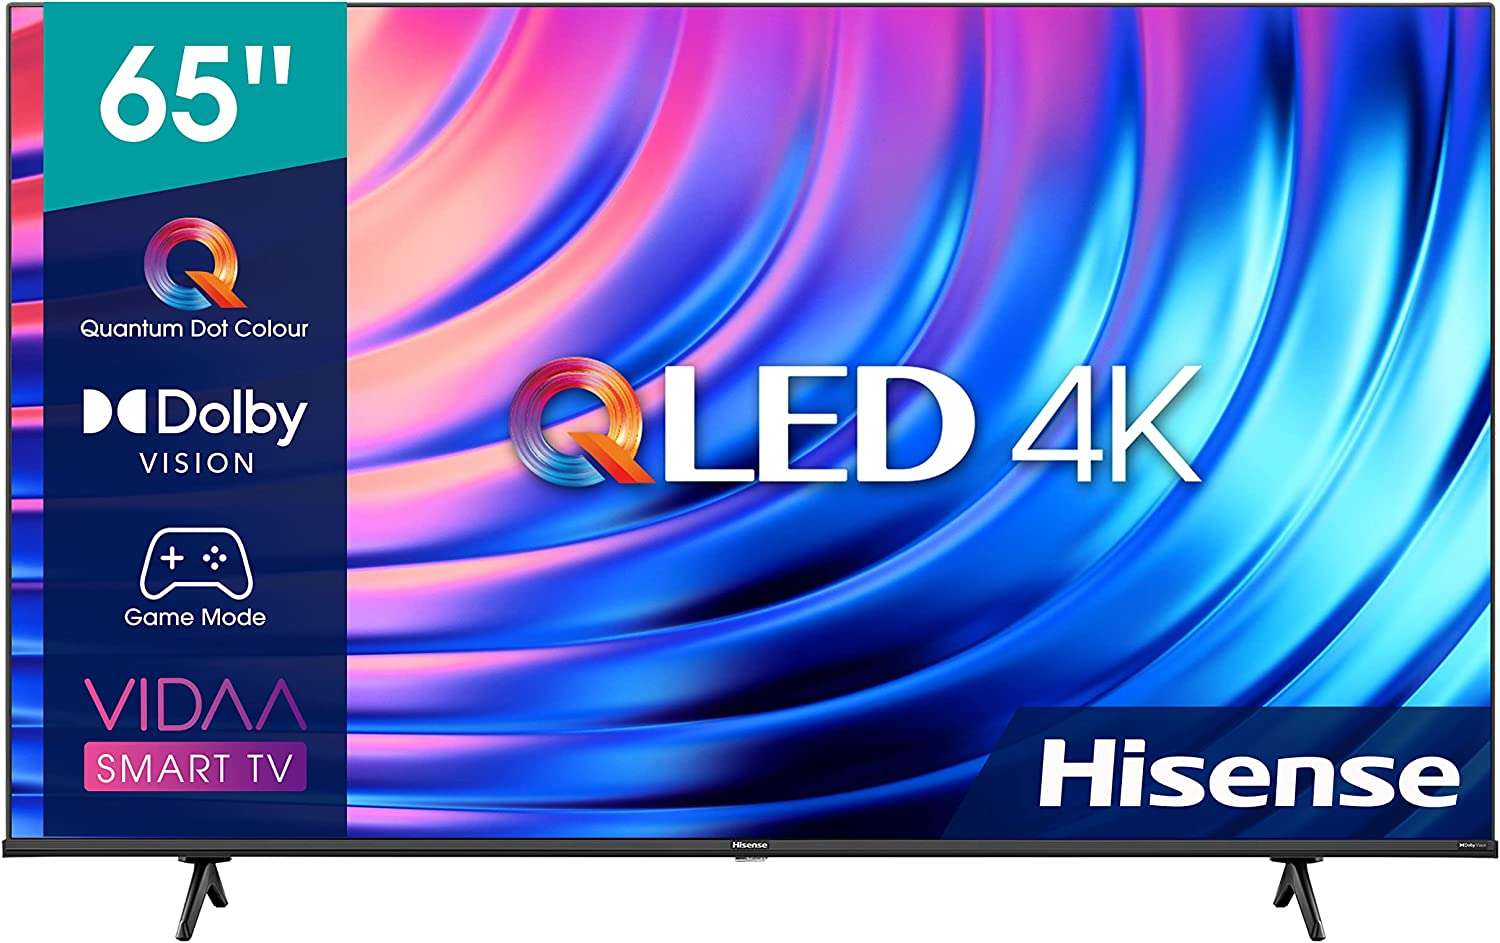 Smart TV Hisense UHD 4K